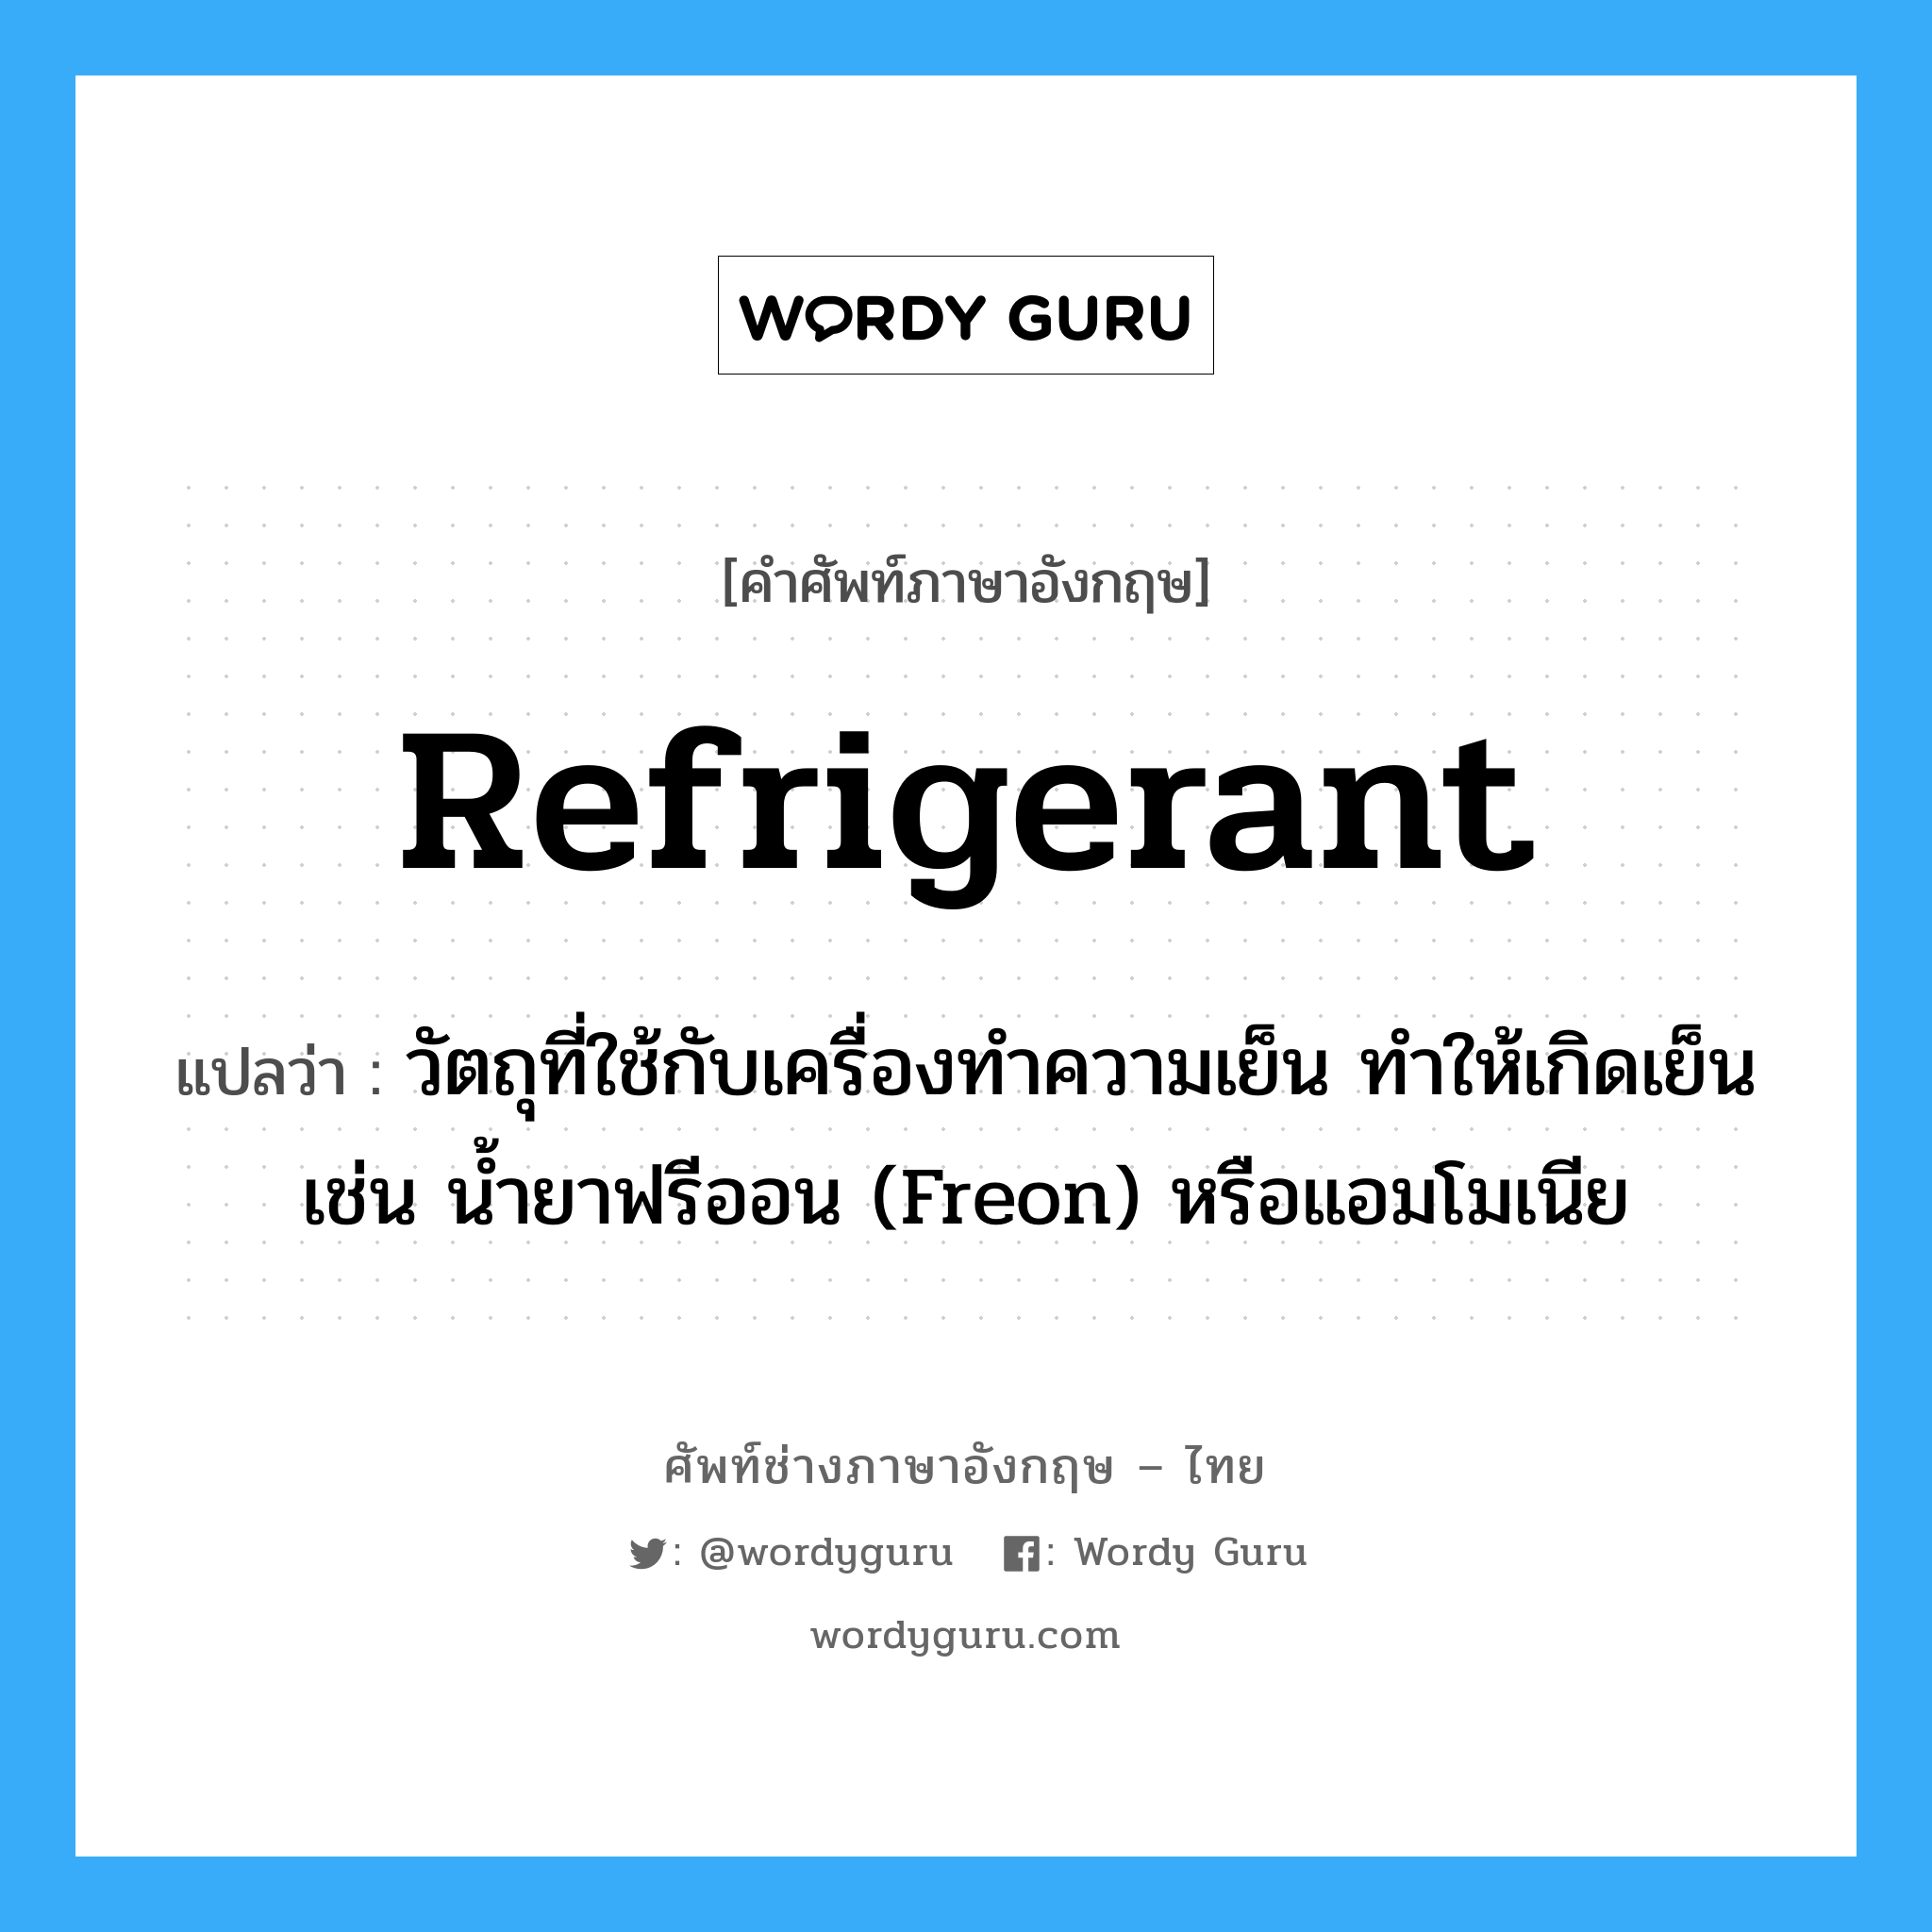 refrigerant แปลว่า?, คำศัพท์ช่างภาษาอังกฤษ - ไทย refrigerant คำศัพท์ภาษาอังกฤษ refrigerant แปลว่า วัตถุที่ใช้กับเครื่องทำความเย็น ทำให้เกิดเย็น เช่น น้ำยาฟรีออน (Freon) หรือแอมโมเนีย